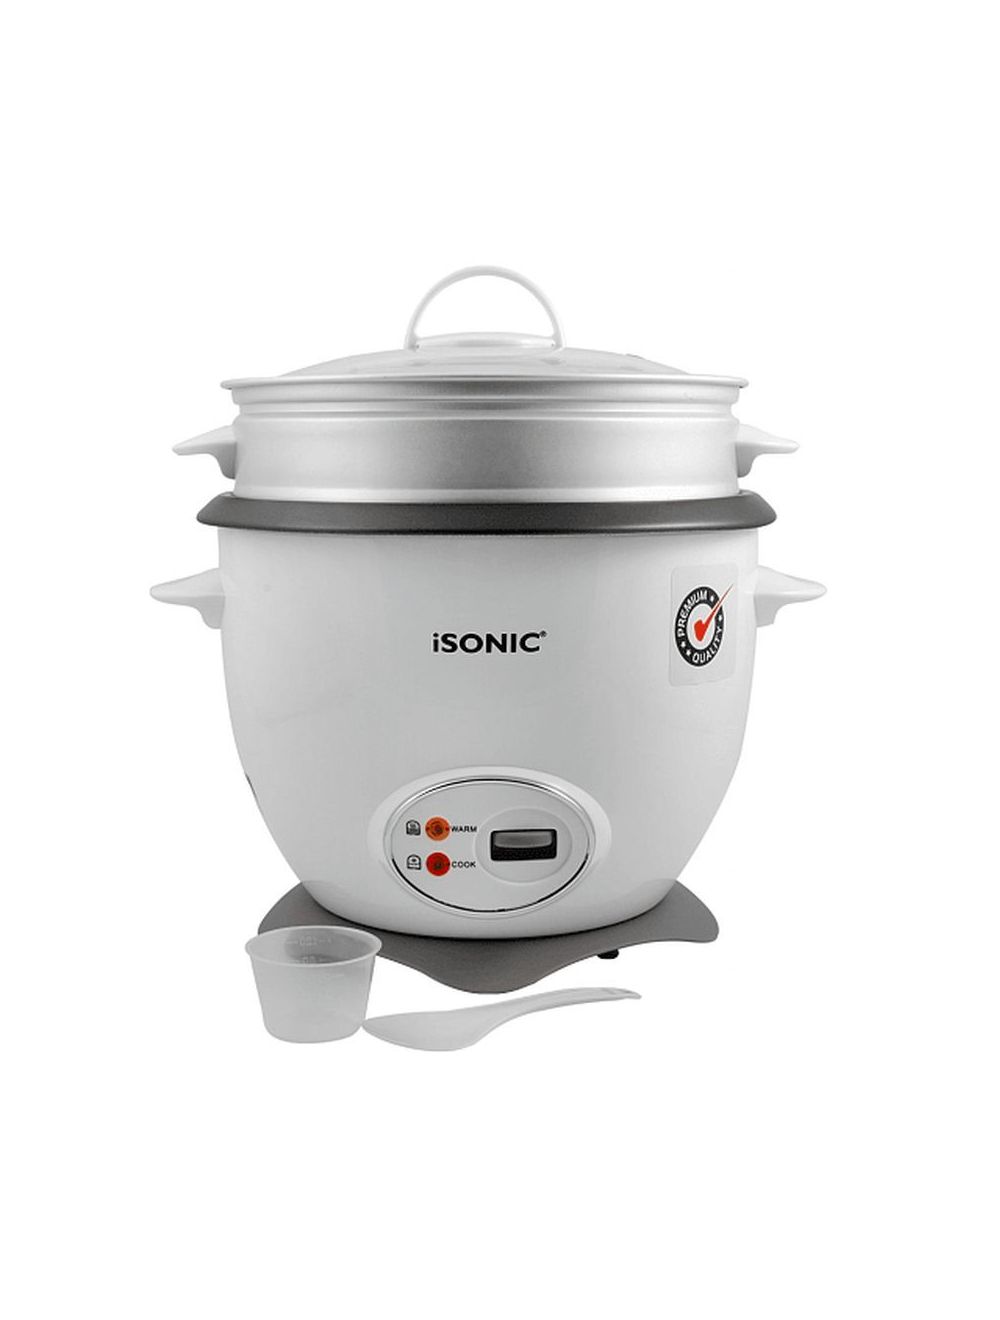 iSONIC 1.8L Premium Rice Cooker-iRC 761